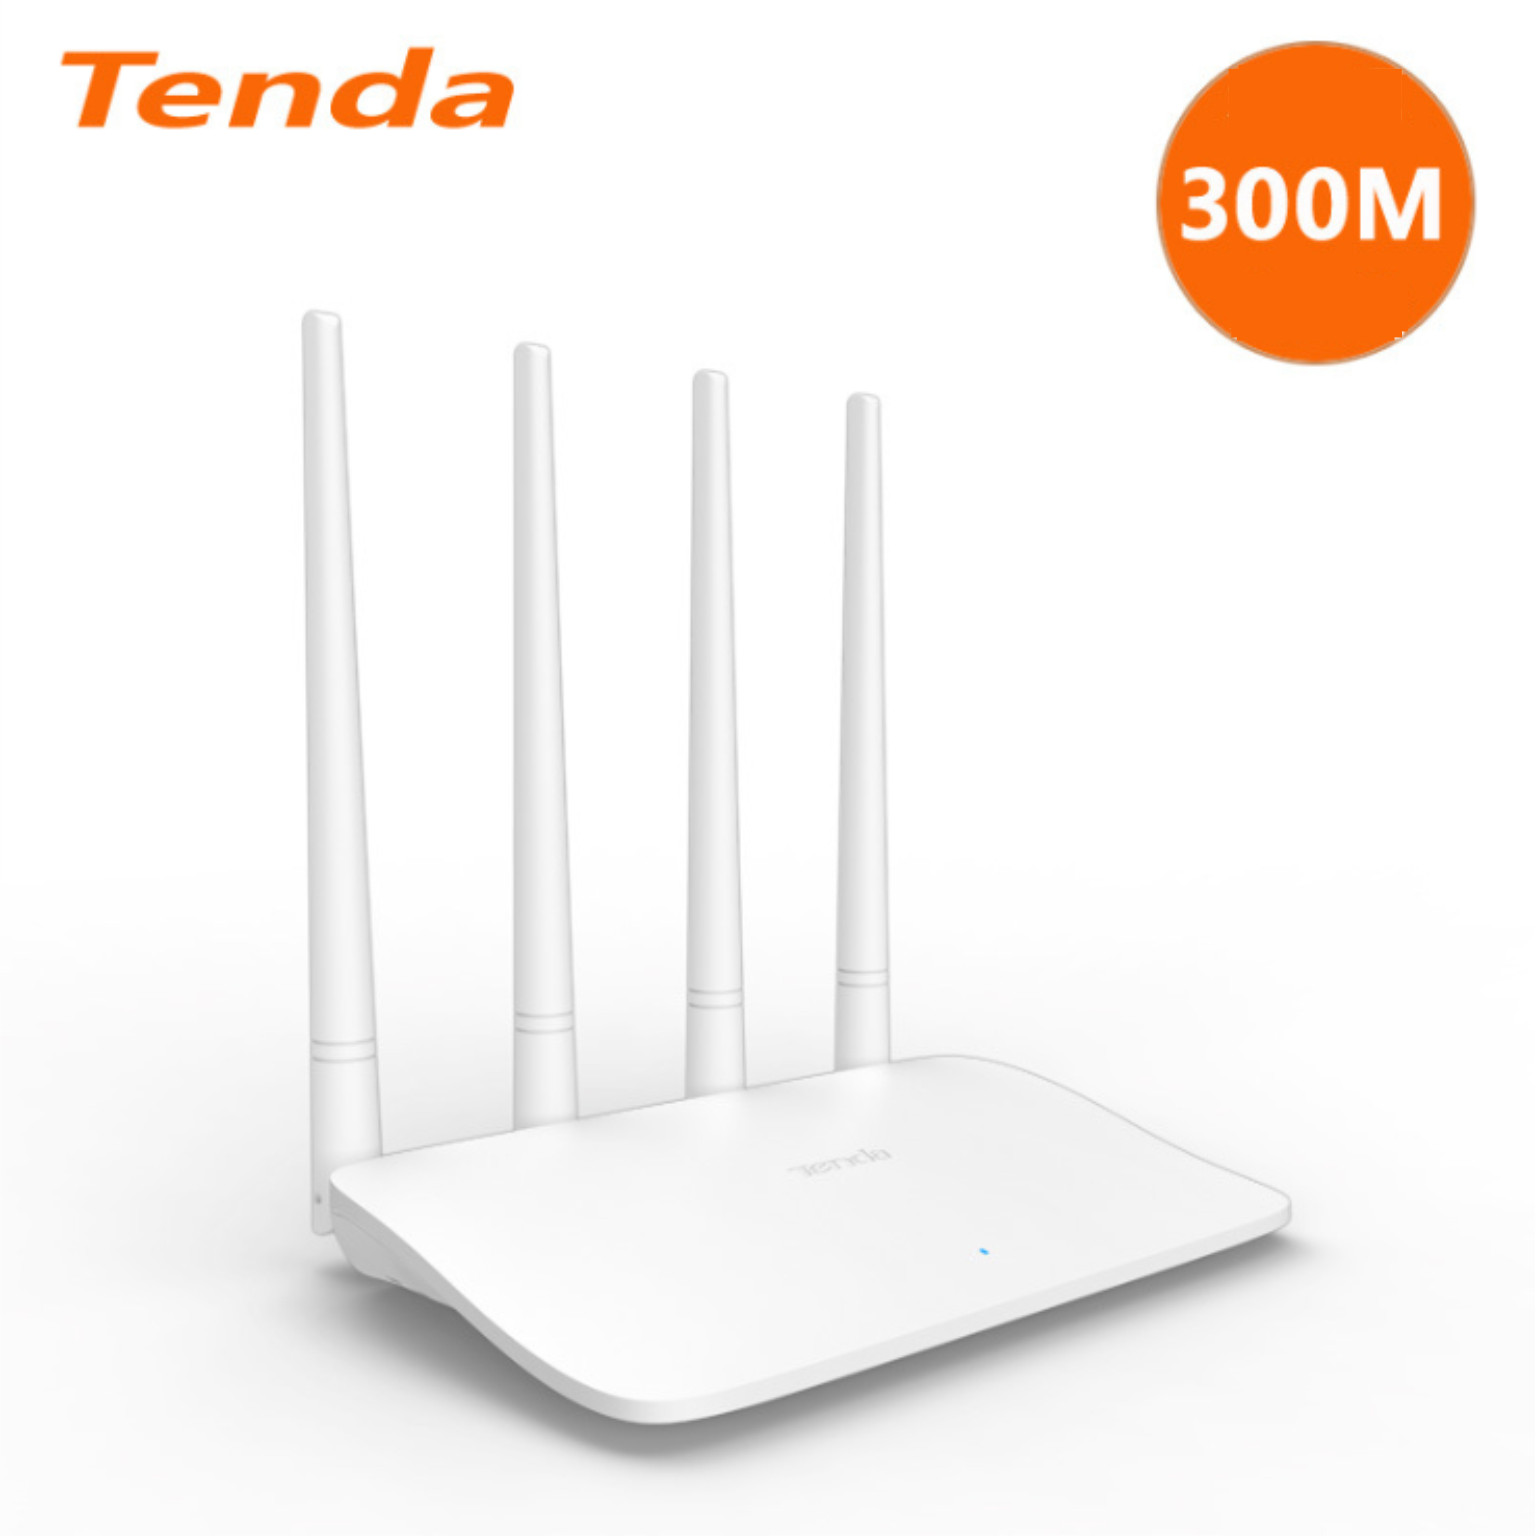 Bộ Phát Wifi Tenda F6 - Hàng Nhập Khẩu